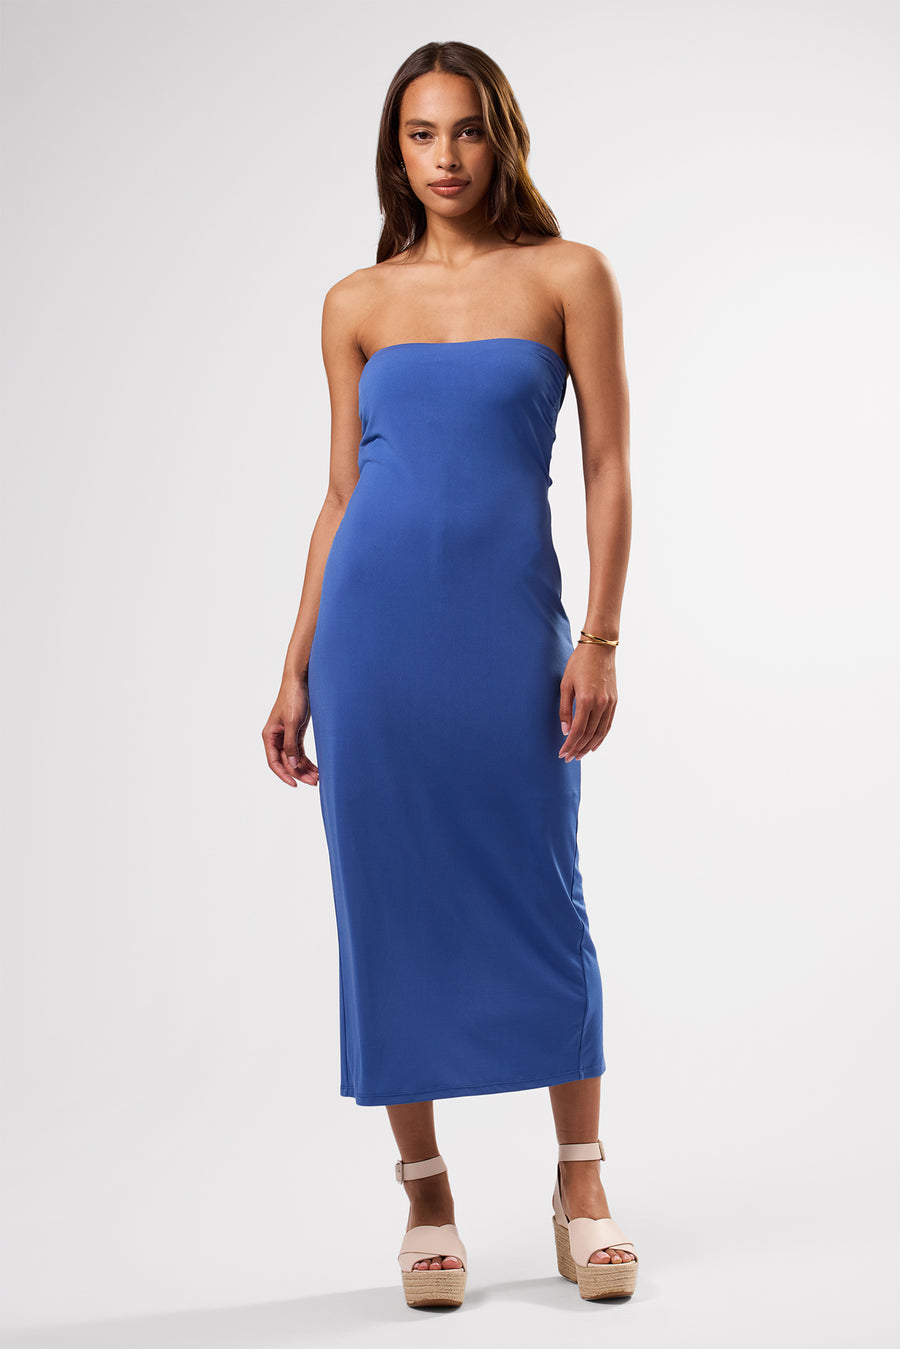 Gio Stretch Knit Dress - Aegean Blue